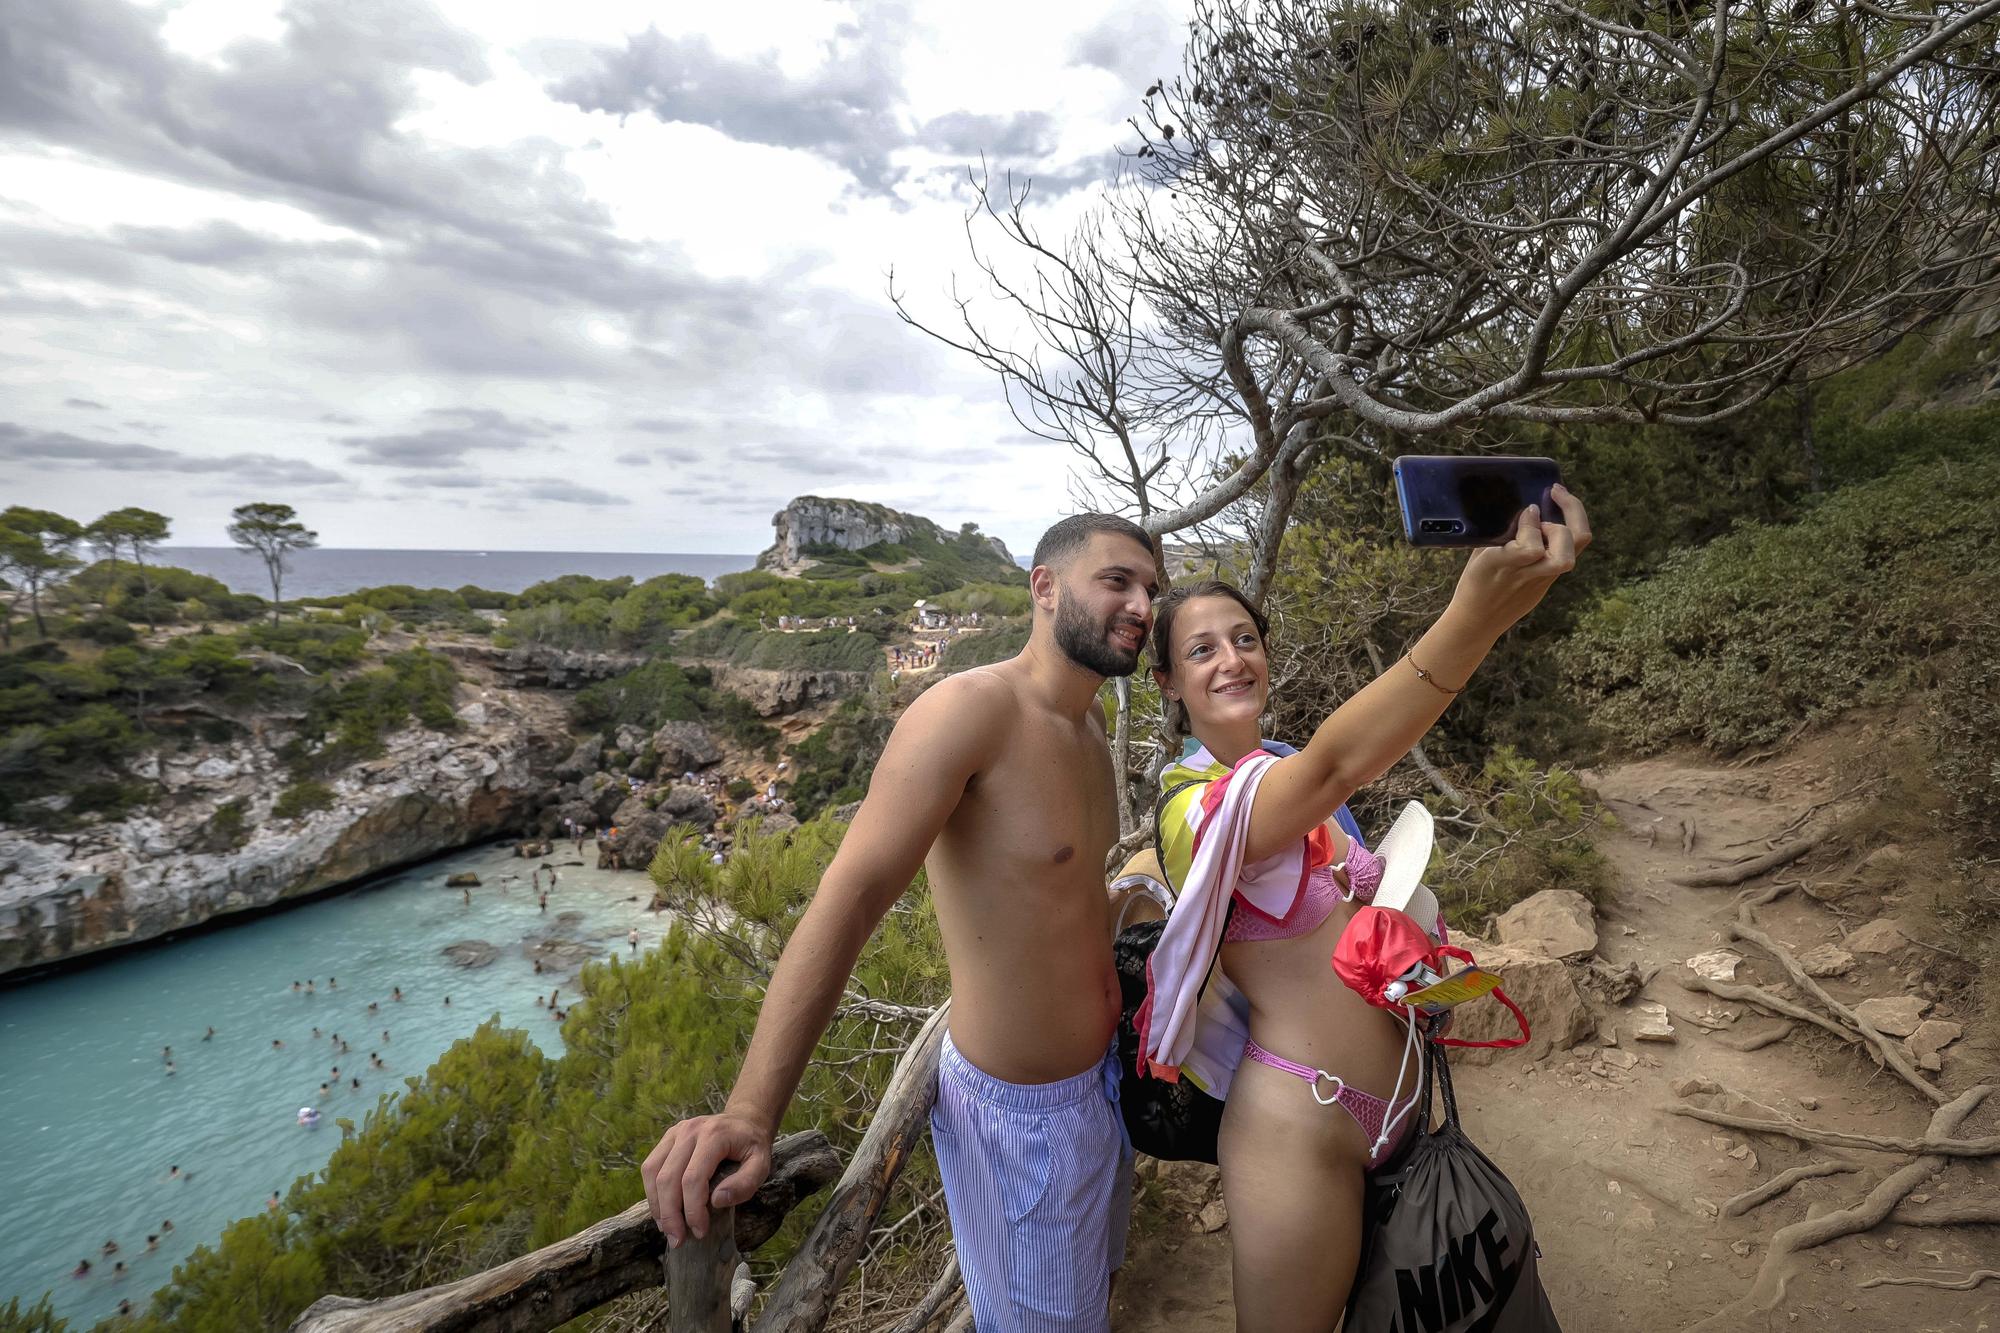 Fotos | El Caló des Moro, saturado de turistas